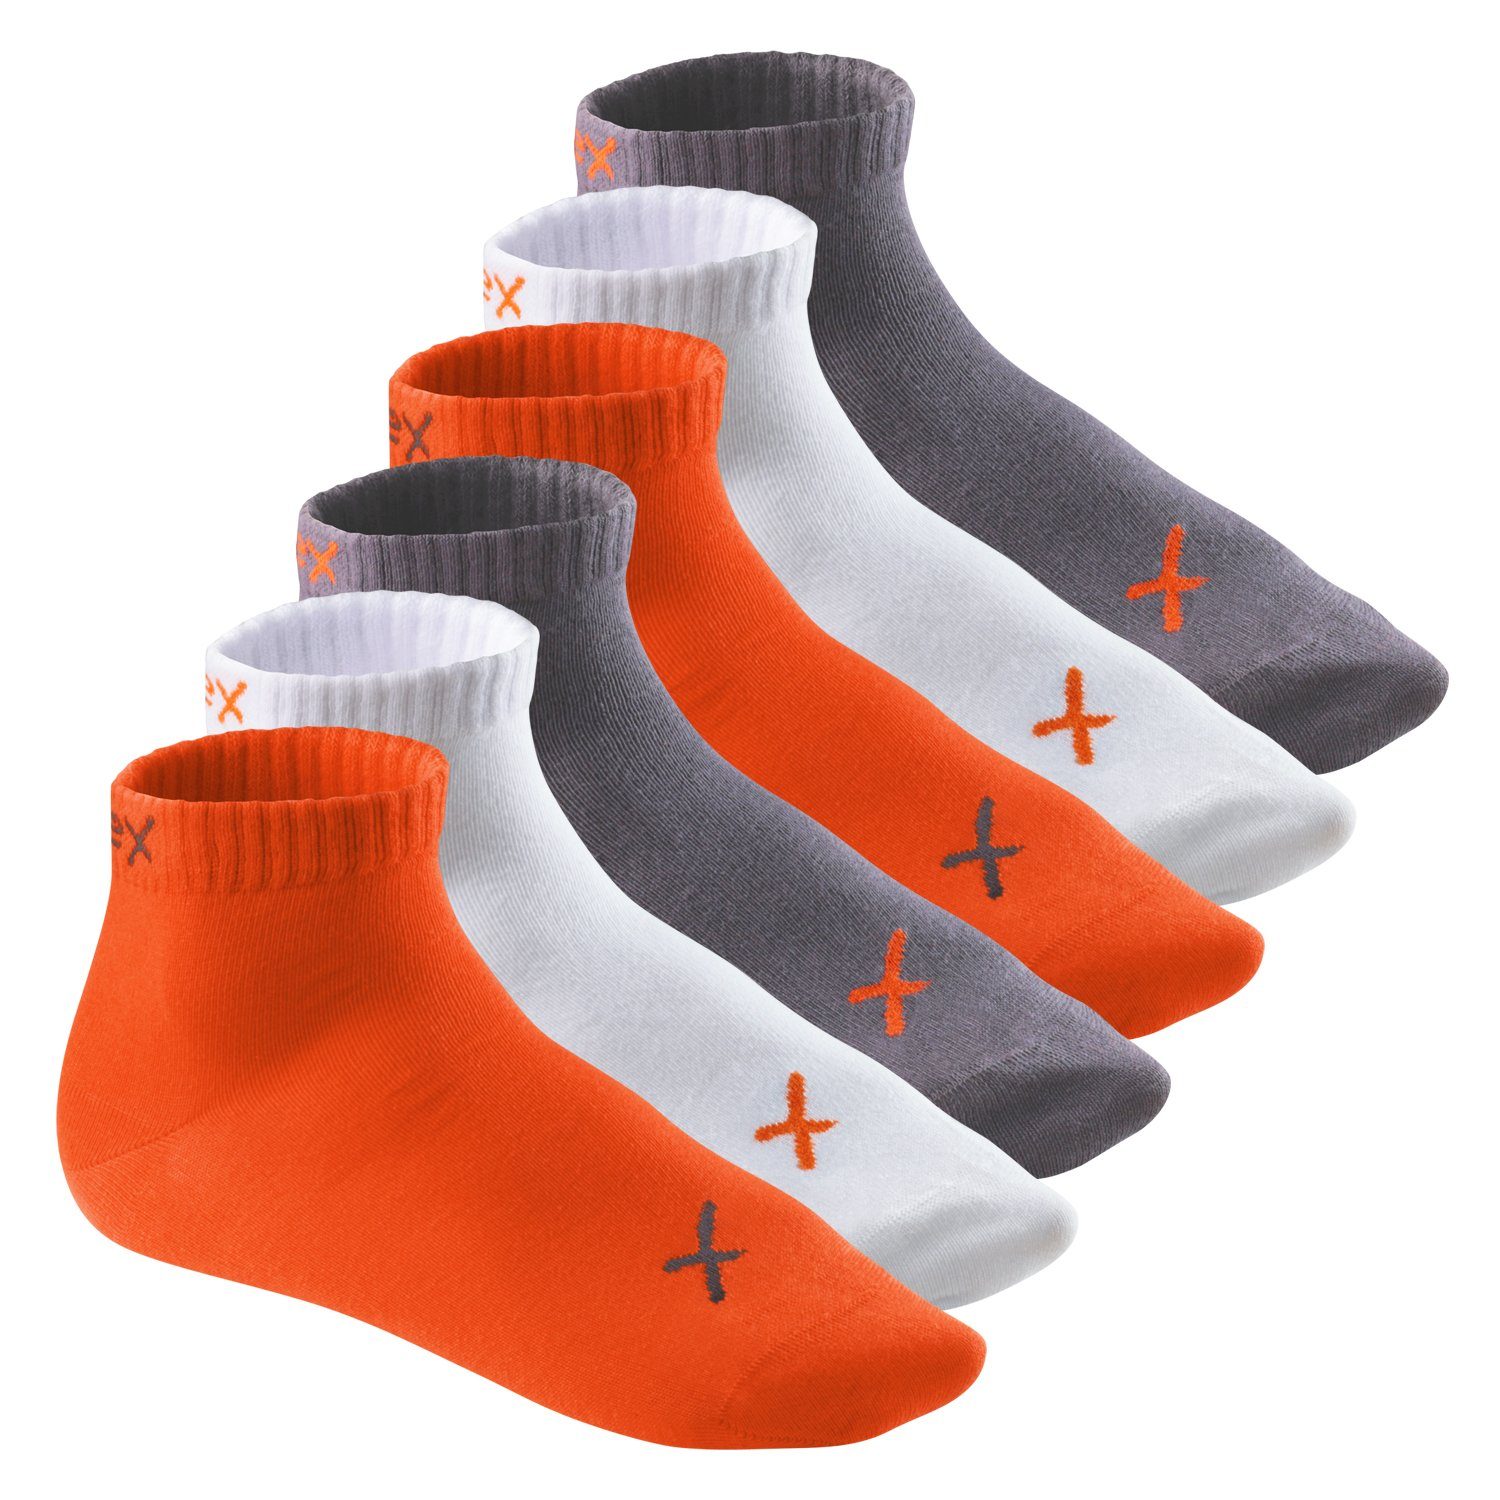 CFLEX Kurzsocken Lifestyle Kurzschaft Socken für Damen & Herren (6 Paar) Sneaker Poppy Excalibur